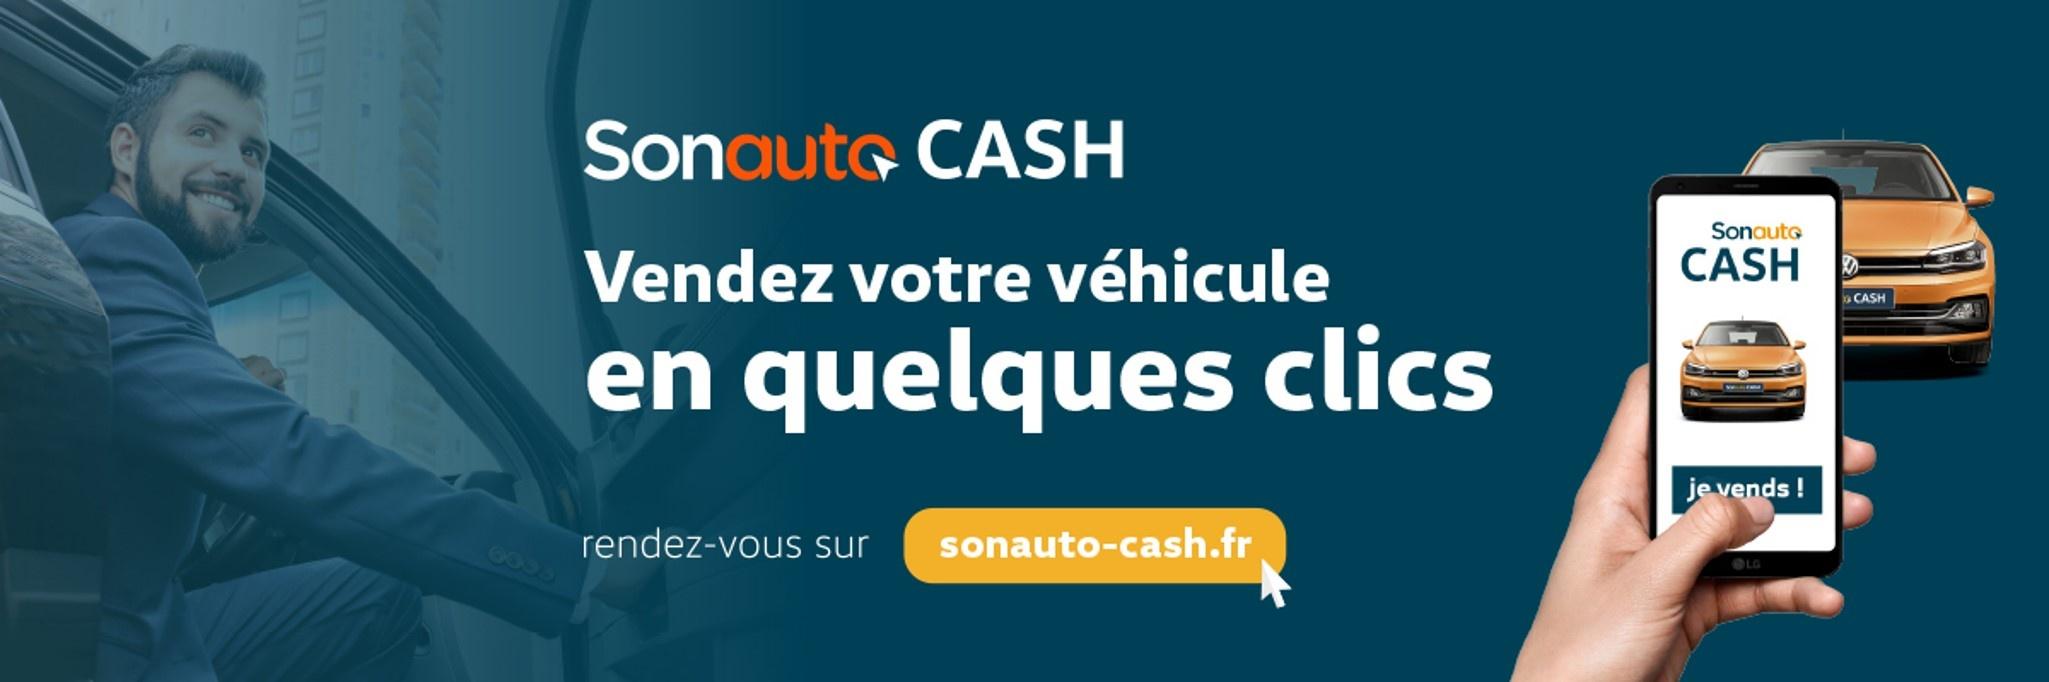 CAR - Vendez votre véhicule en quelques clics avec Sonauto Cash